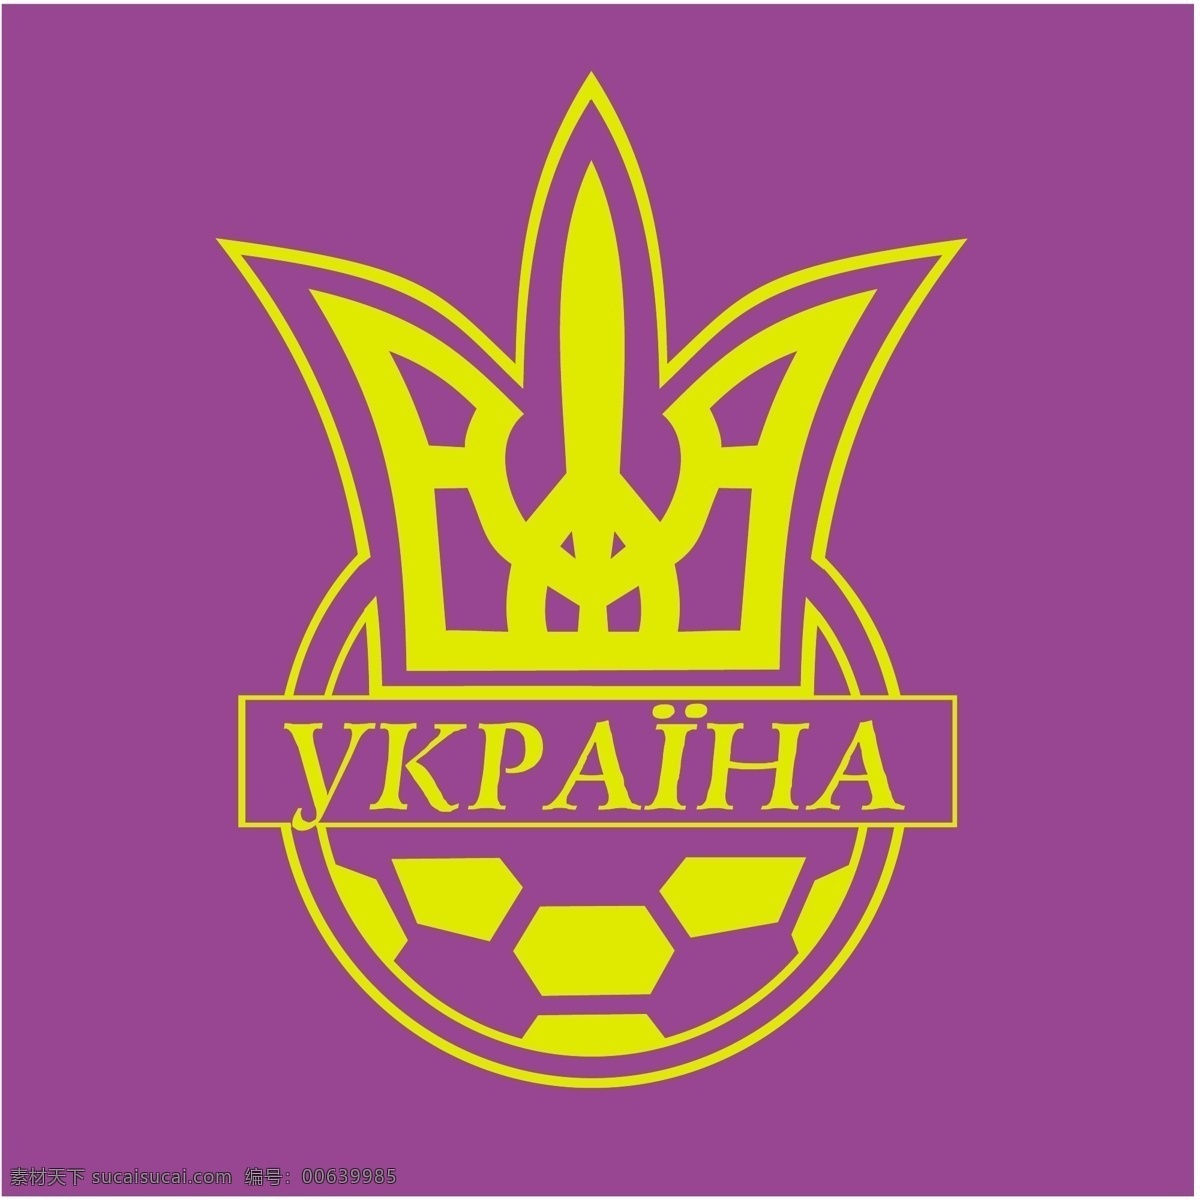 乌克兰 足球 协会 自由 标志 标识 psd源文件 logo设计